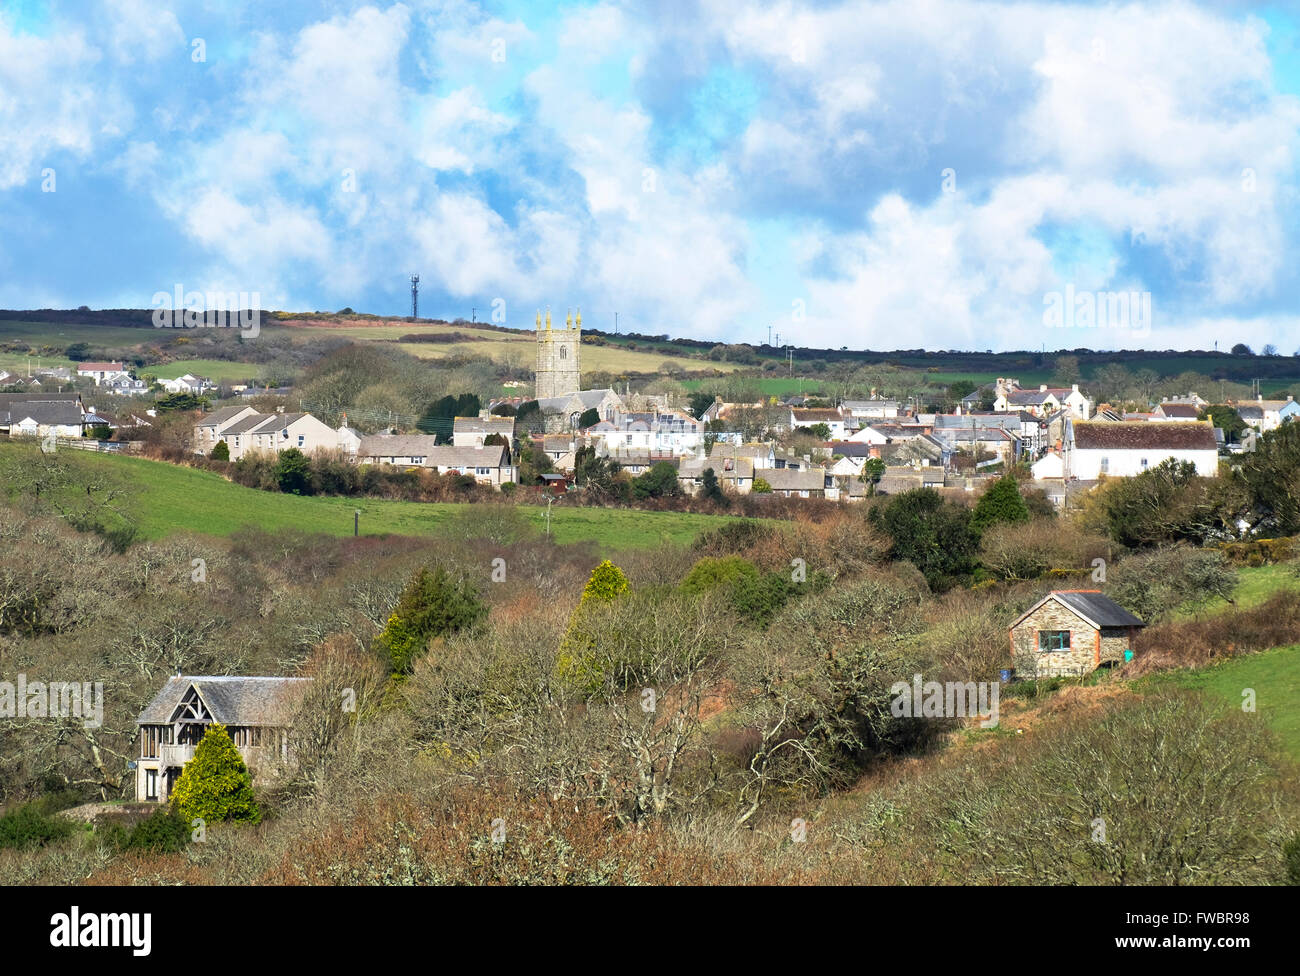 Il villaggio di Costantino si trova nella campagna tra Helston e Falmouth in Cornovaglia, England, Regno Unito Foto Stock